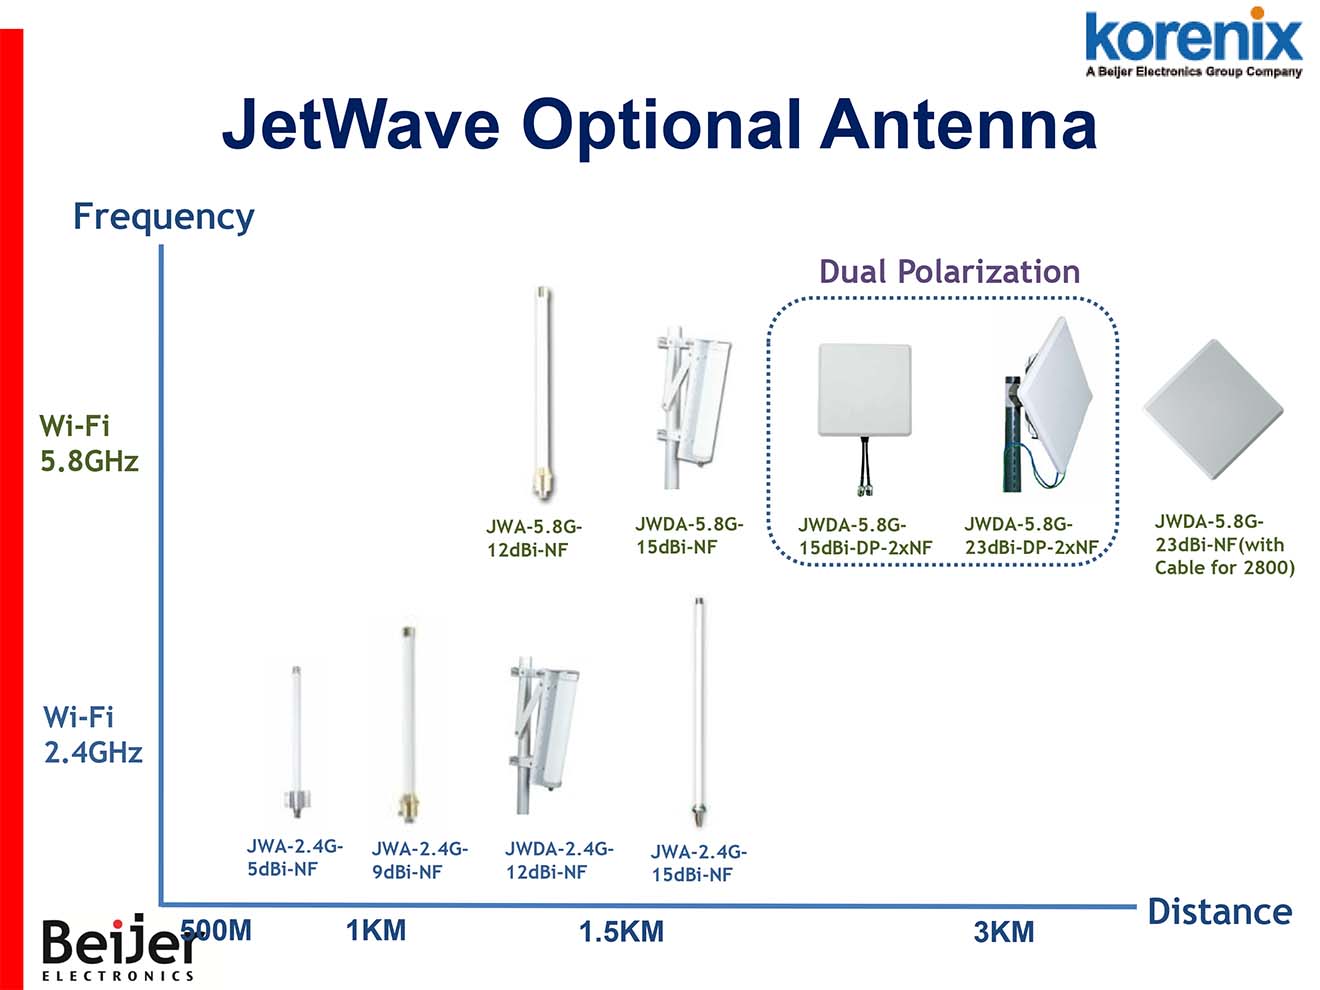 JWDA-2.4G-15dBi-NF Korenix Anten Omi đẳng hướng tăng khoảng cách thu phát sóng 15dBi